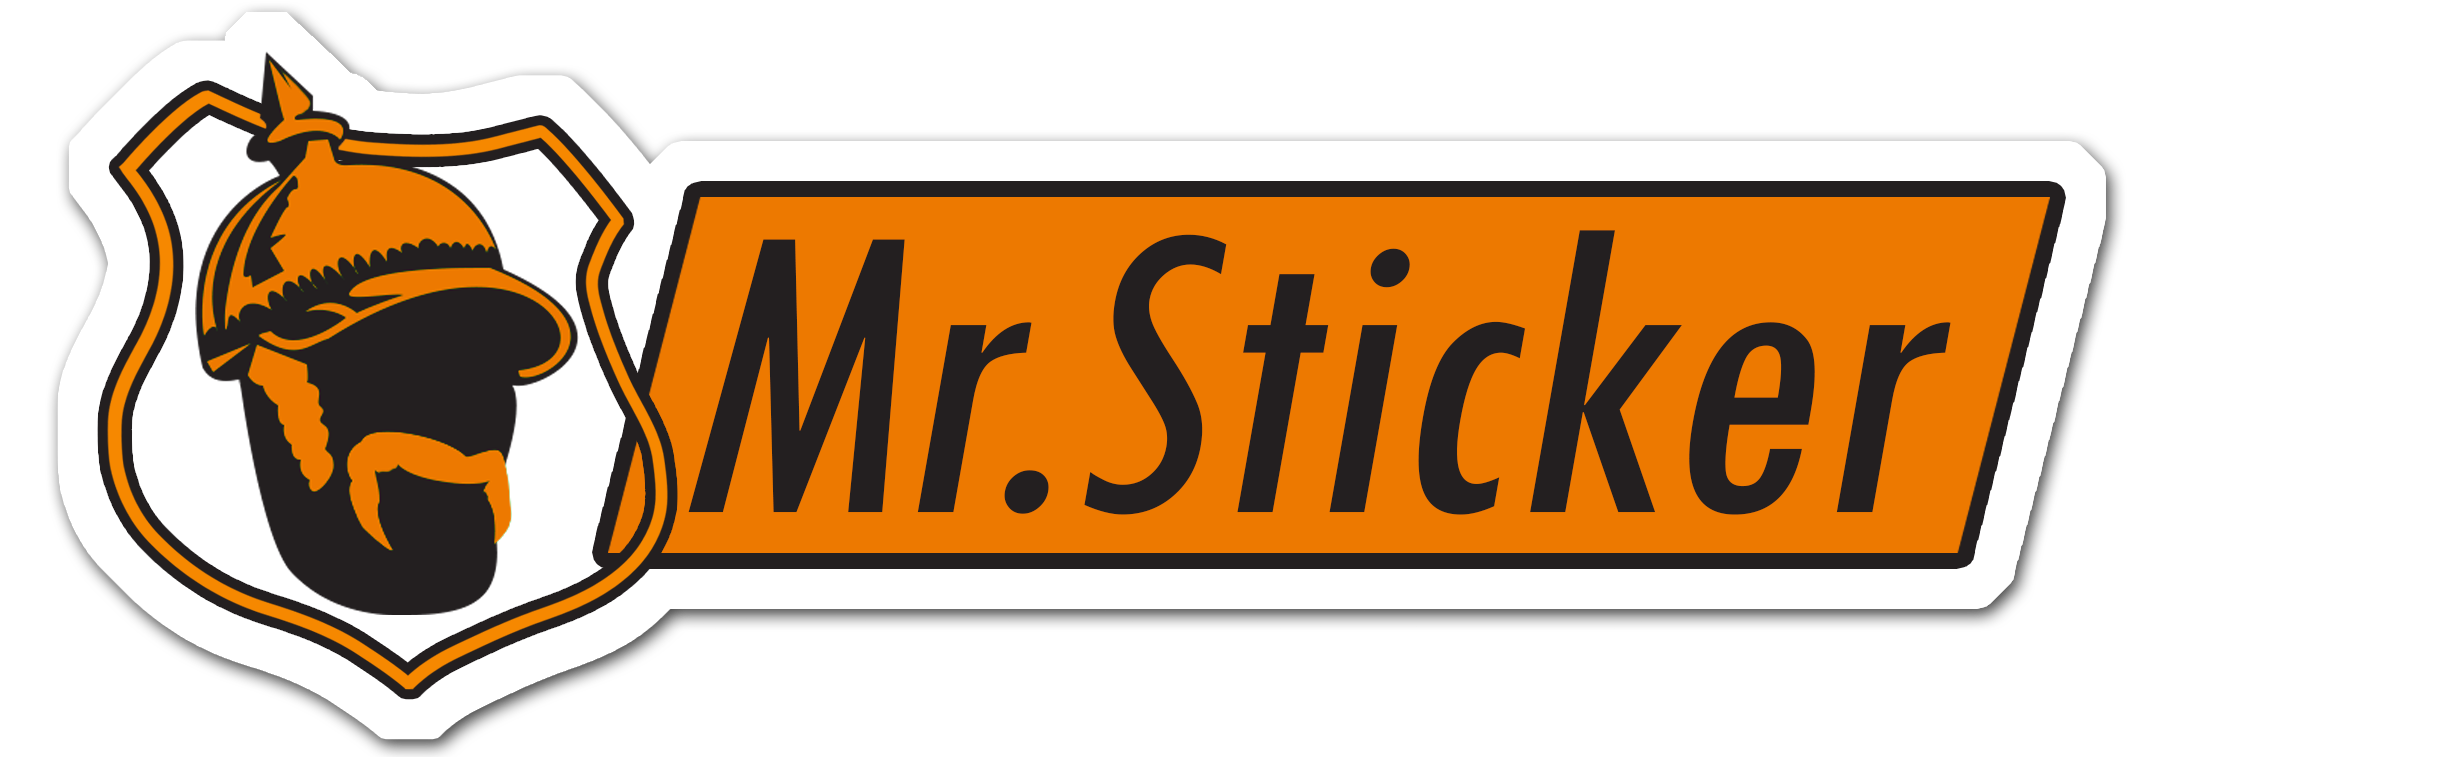 Mr Sticker